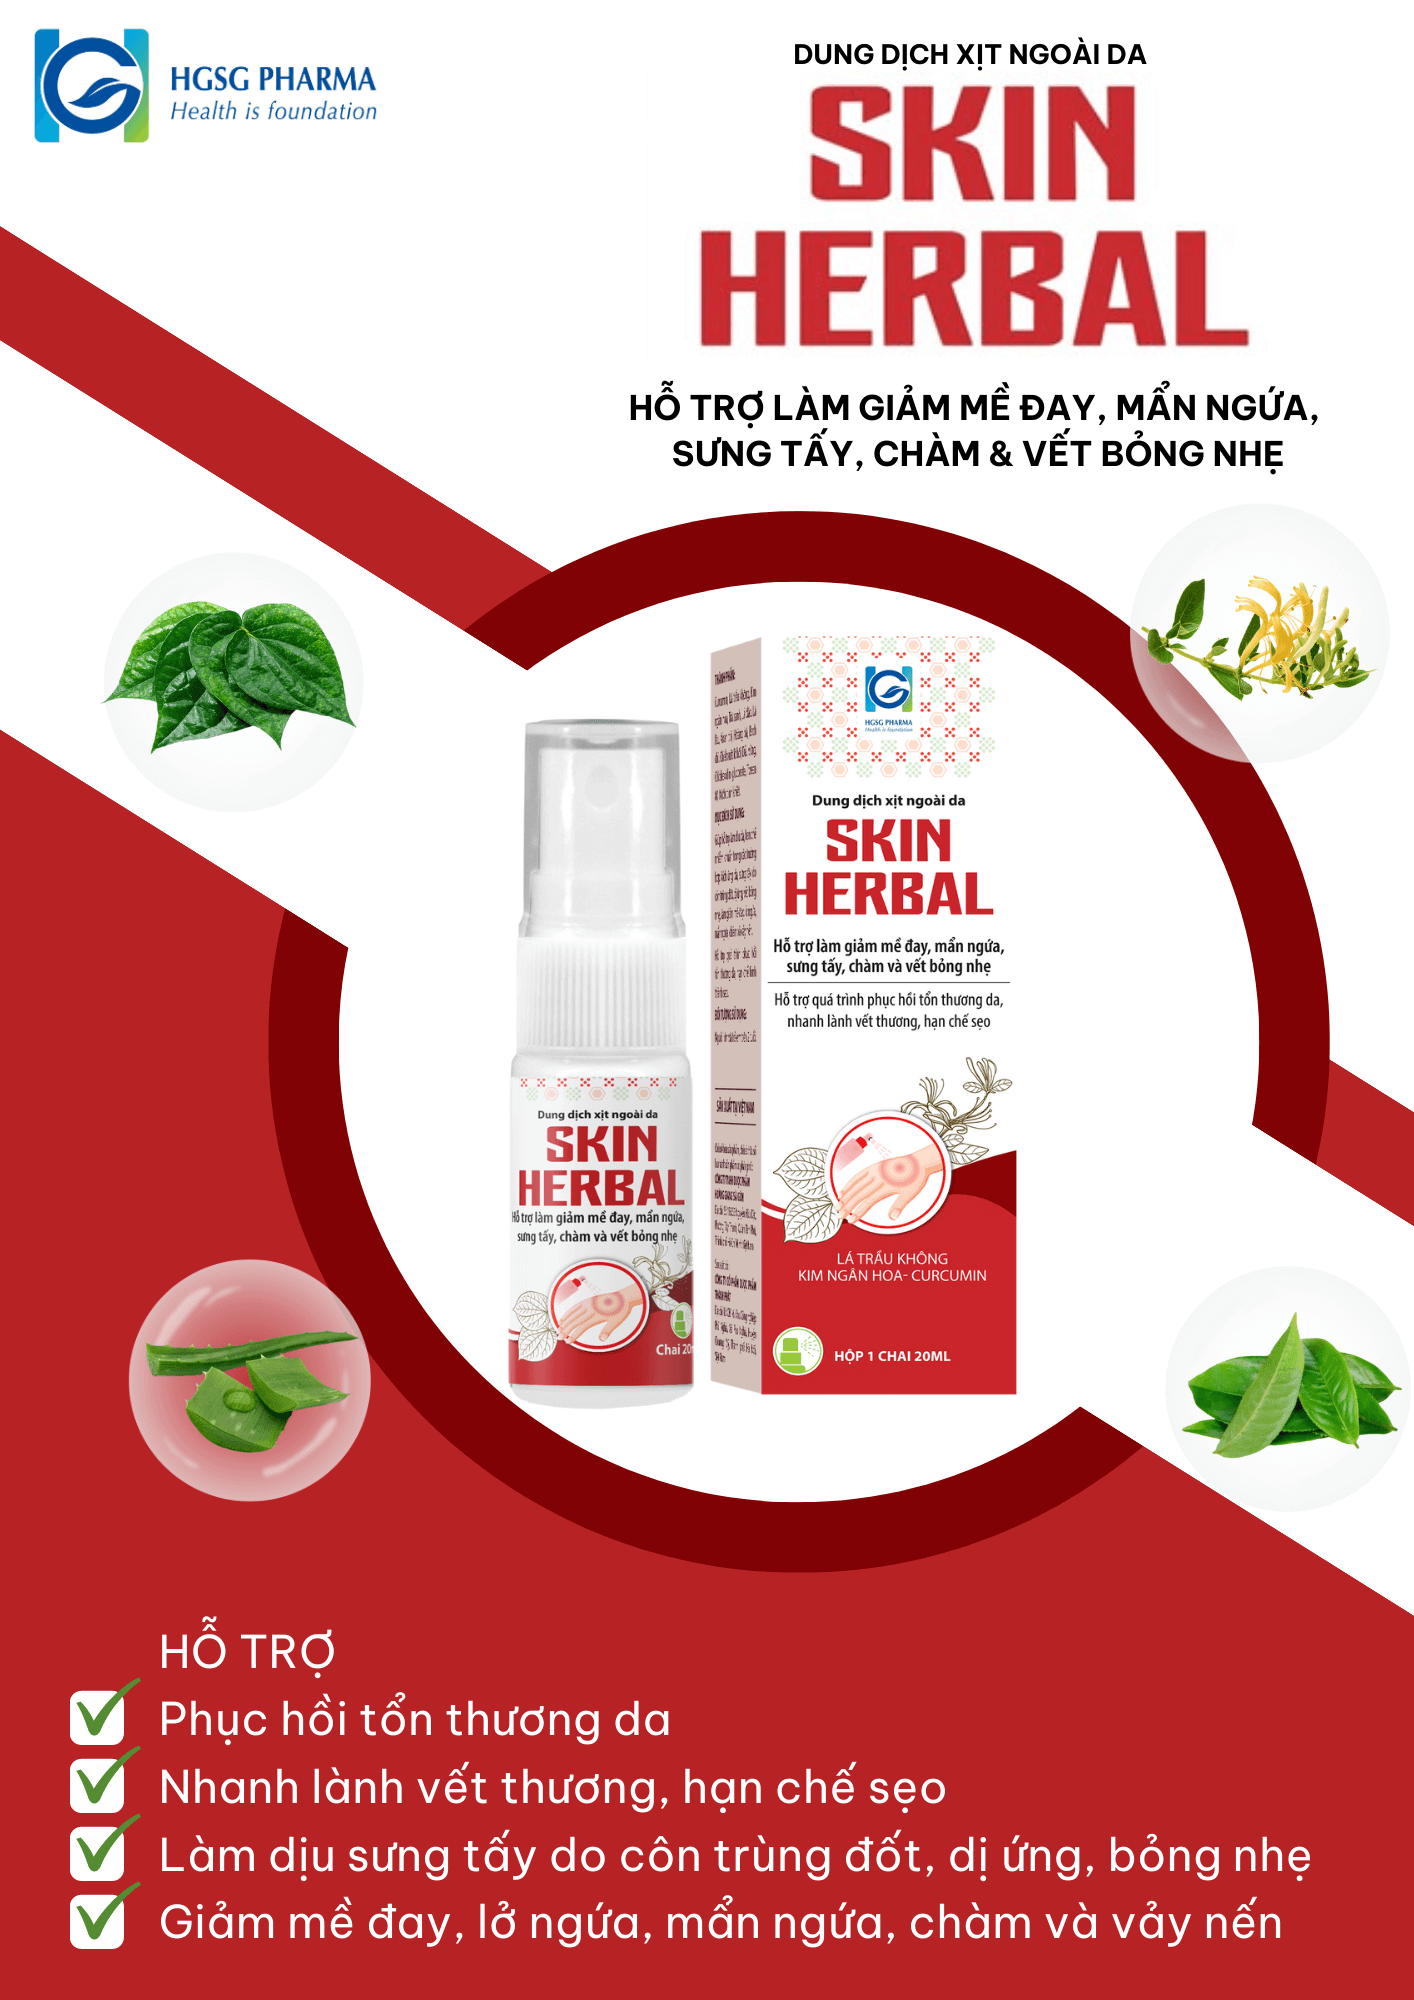 Dung dịch xịt ngoài da Skin Herbal hỗ trợ làm giảm mề đay, mẩn ngứa, sưng tấy, chàm & vết bỏng nhẹ